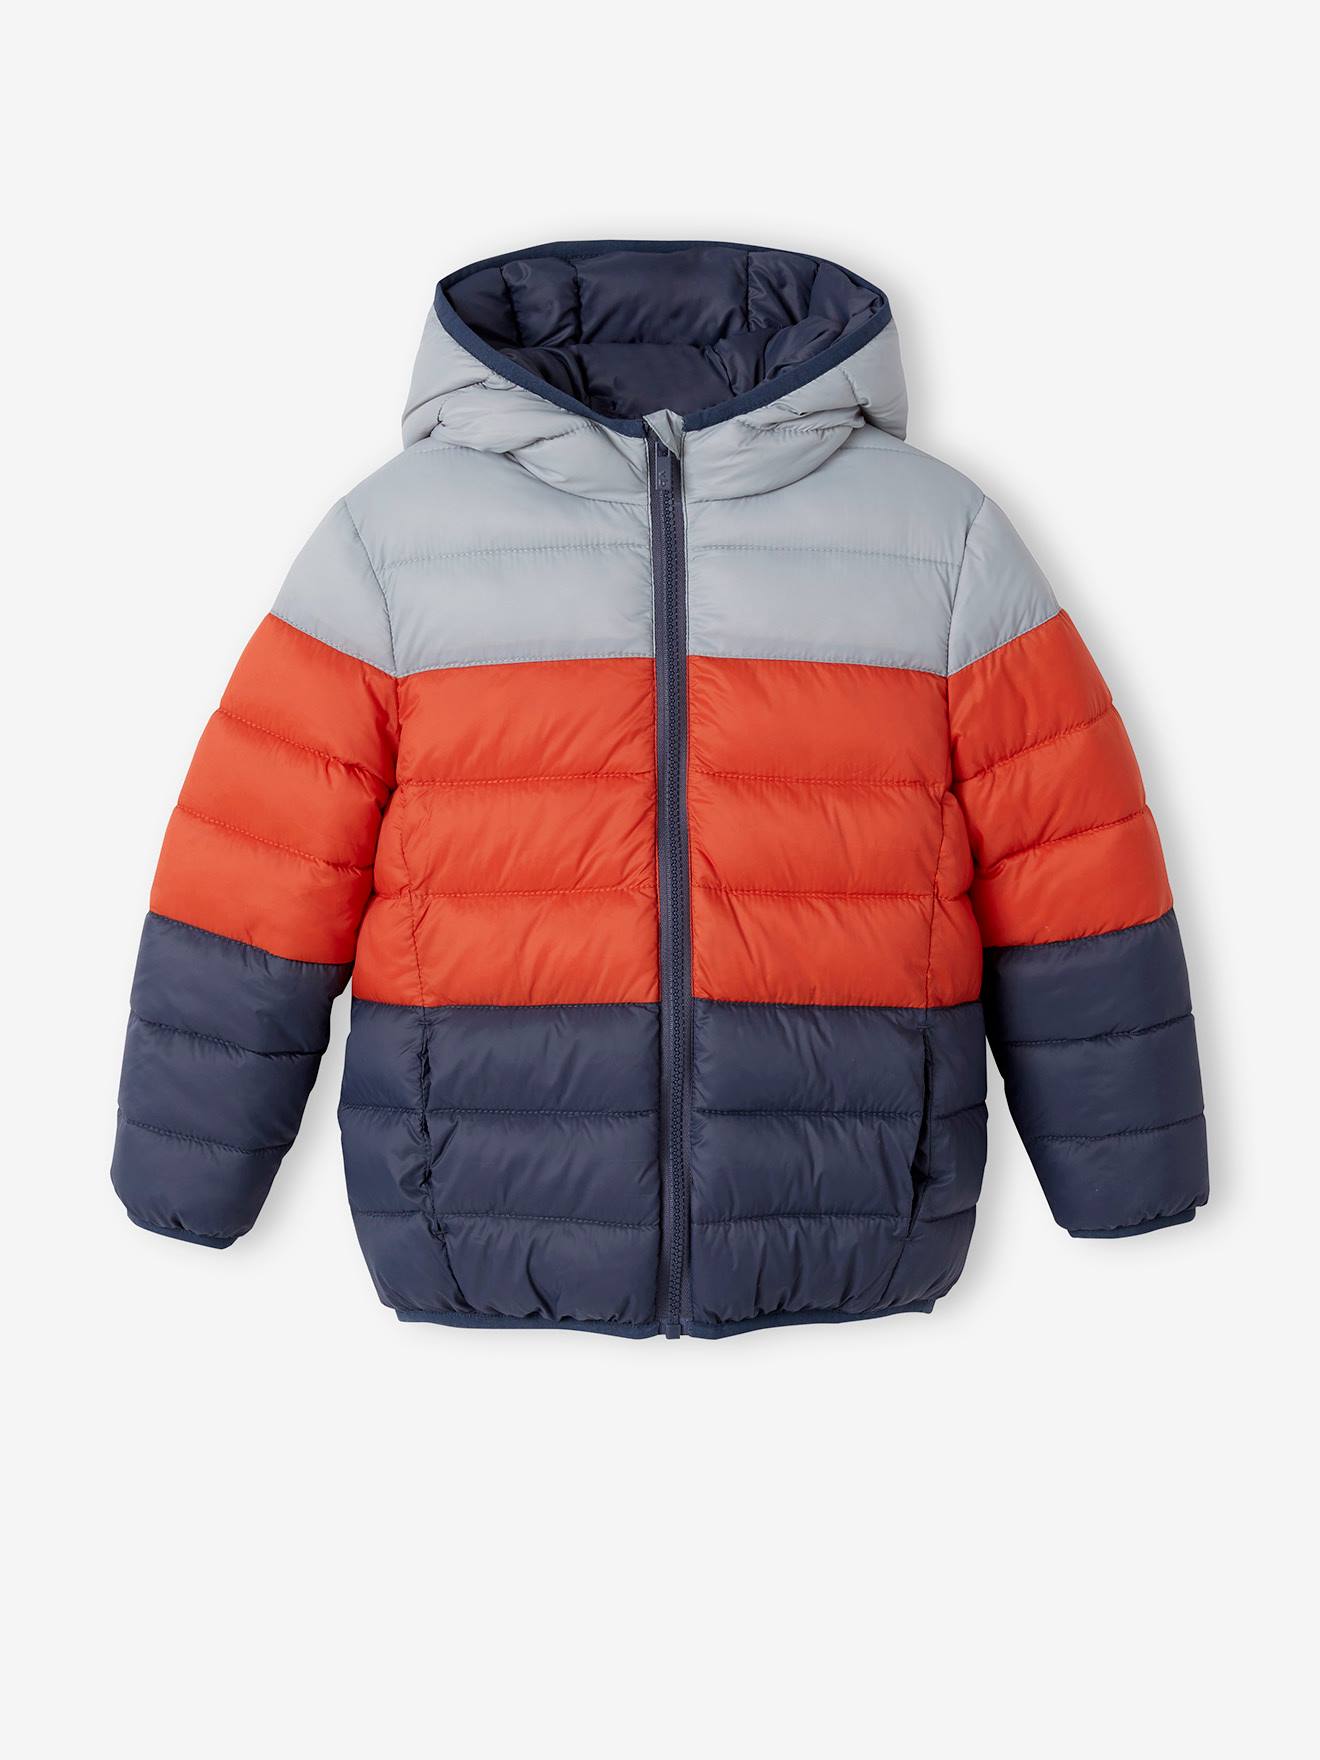 Reversible Kids Girls Winter Padded Warm Coat Jacket Hooded Outerwear Size 3-12Y 